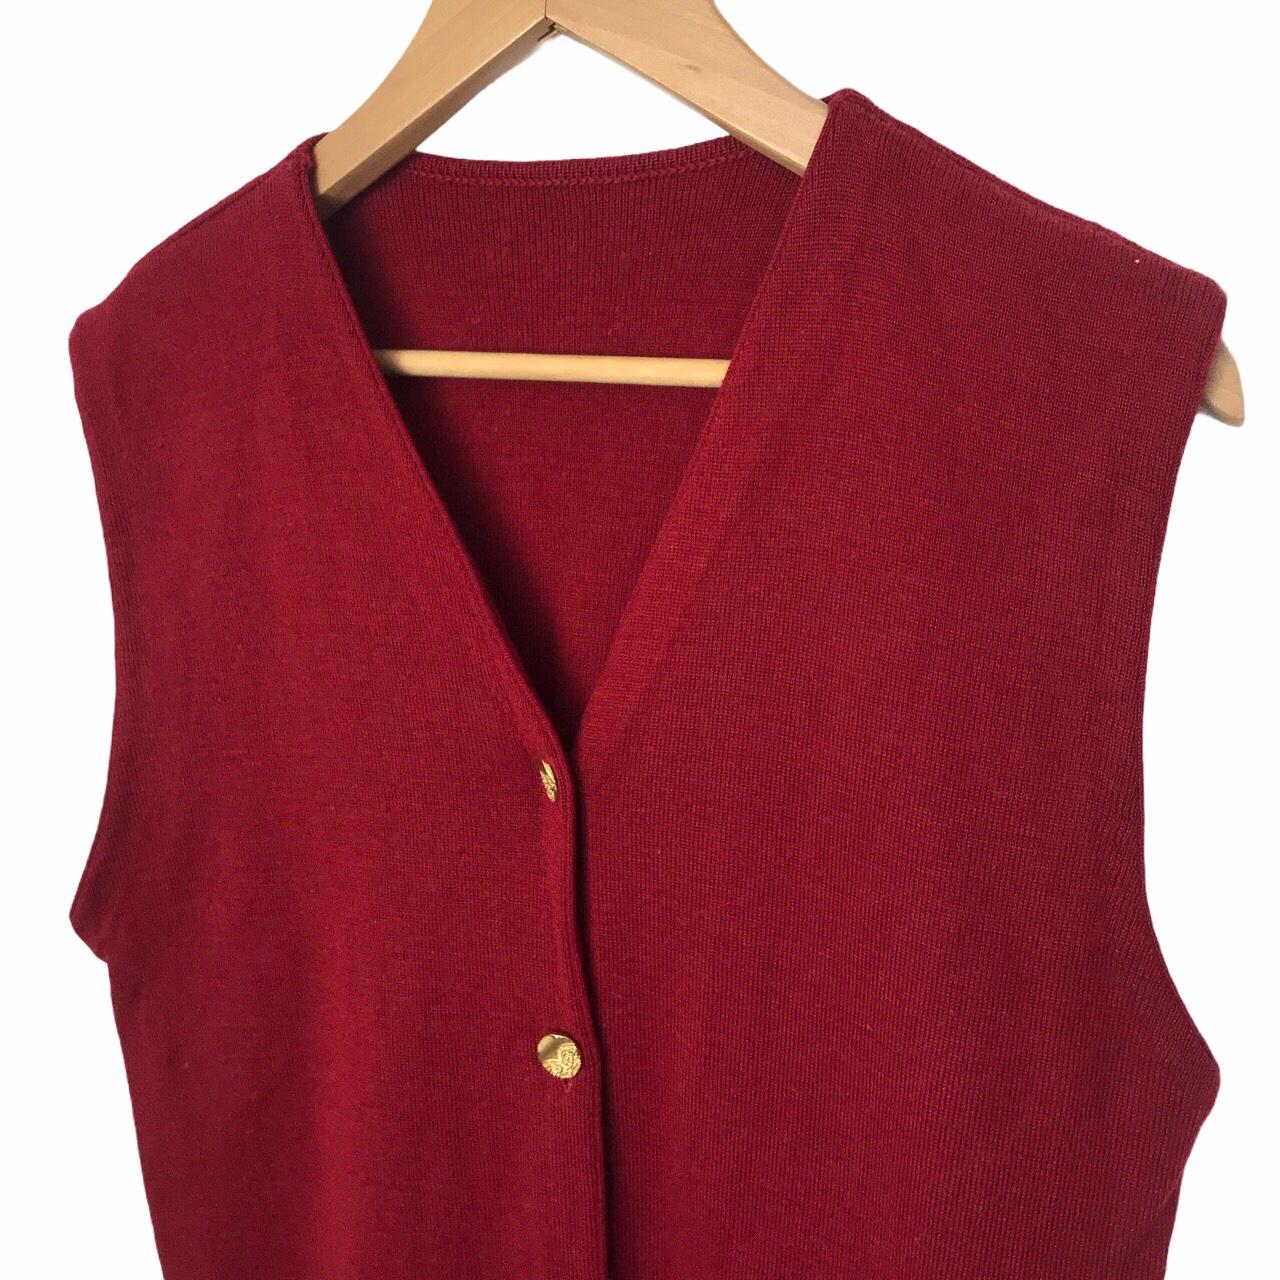 Sweater vest Free UK delivery 📦 Size large, UK... - Depop